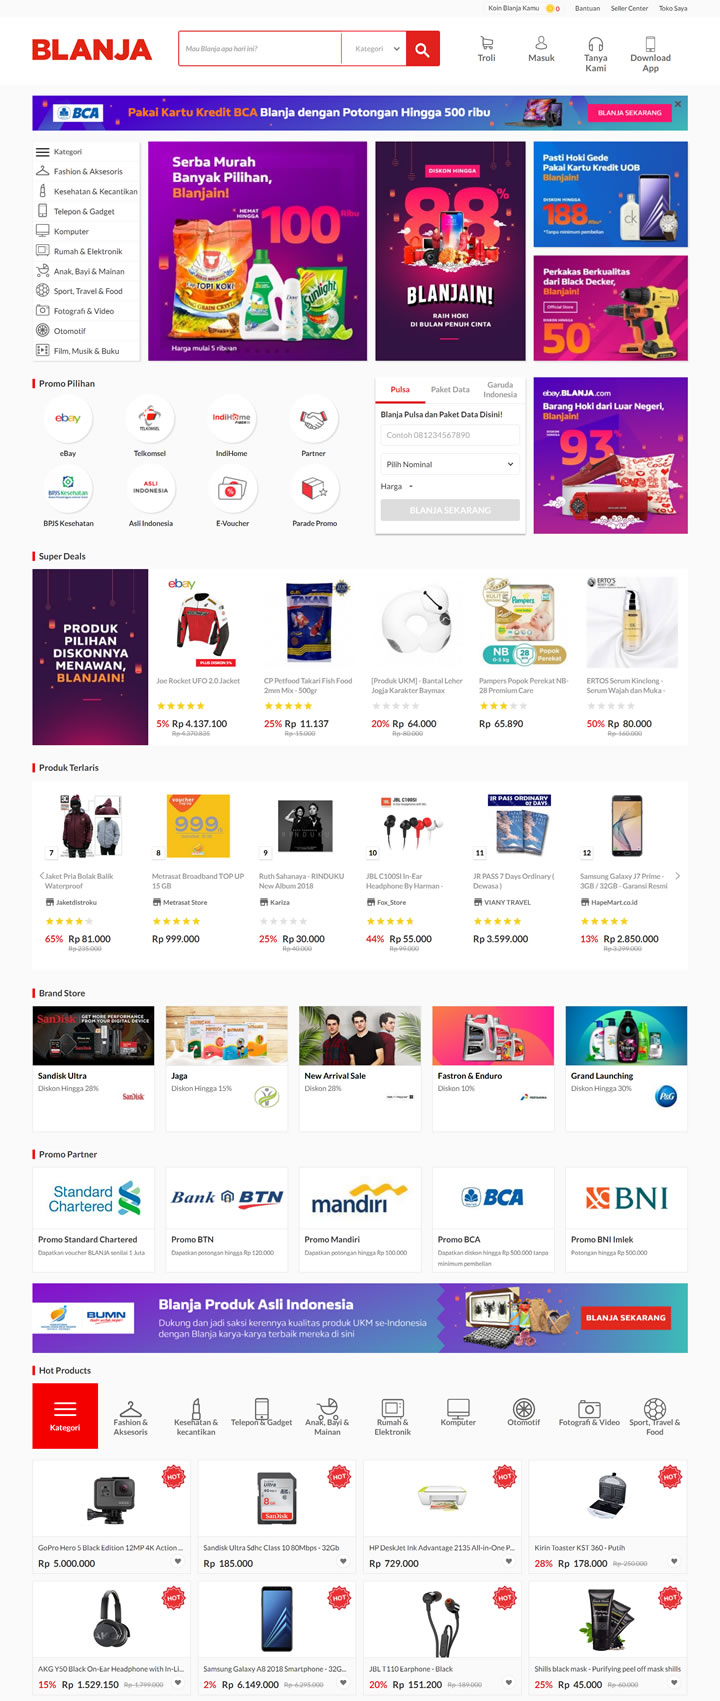 印尼电信和eBay合资的购物网站： BLANJA